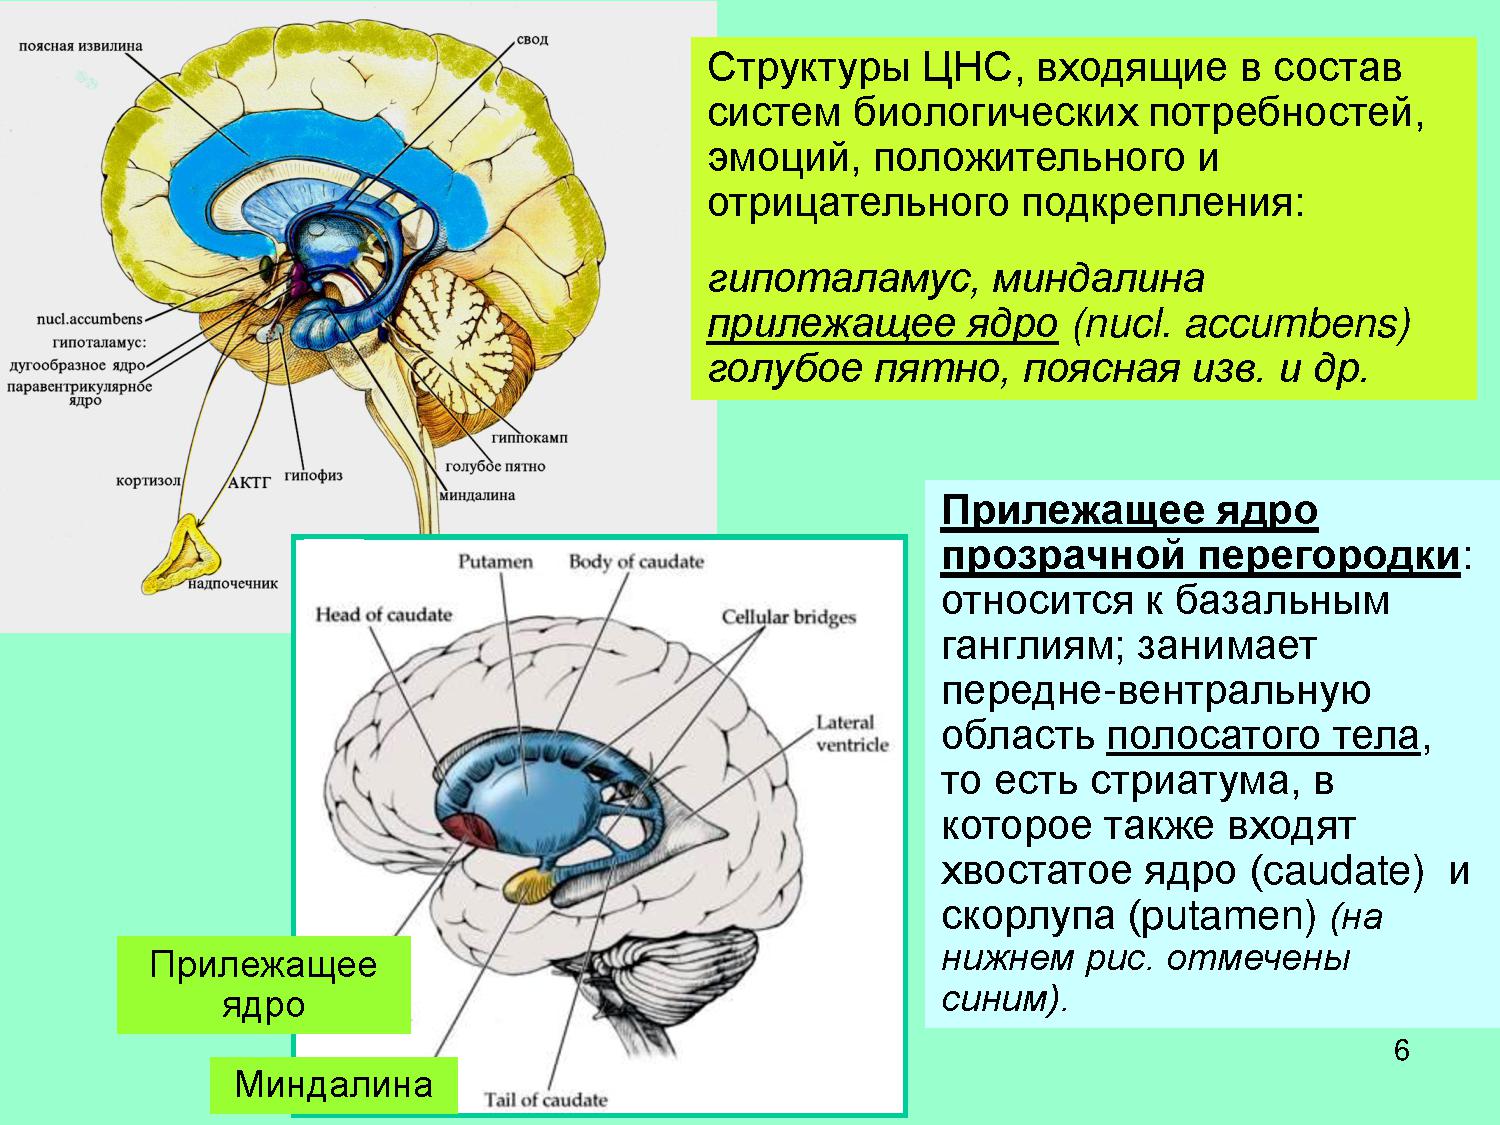 Что такое путамен 8 букв. Прилежащее ядро головного мозга. Хвостатое ядро мозга строение. Функции хвостатого ядра головного мозга. Базальные ганглии и лимбическая система.